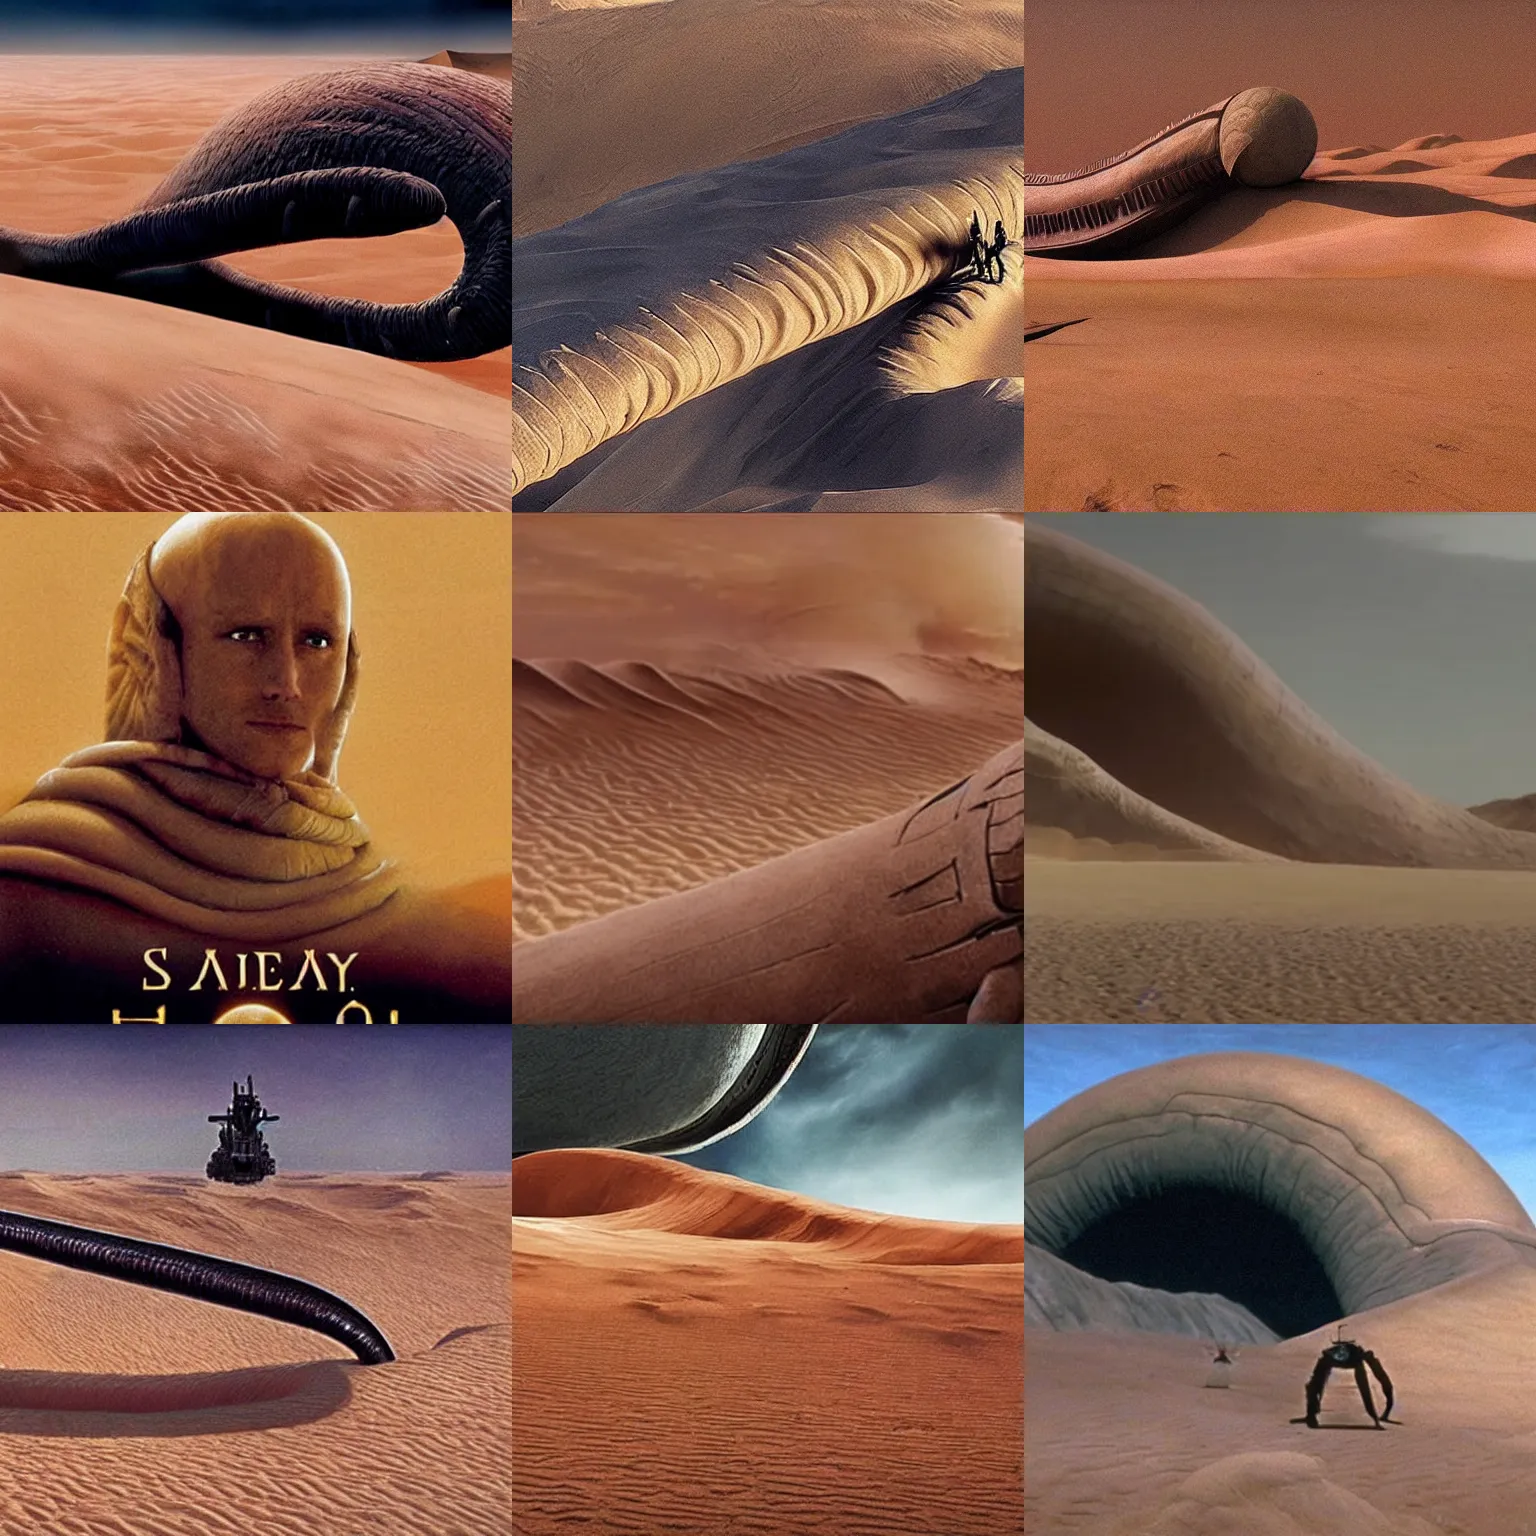 Prompt: Shai-Hulud. Dune movie 2021